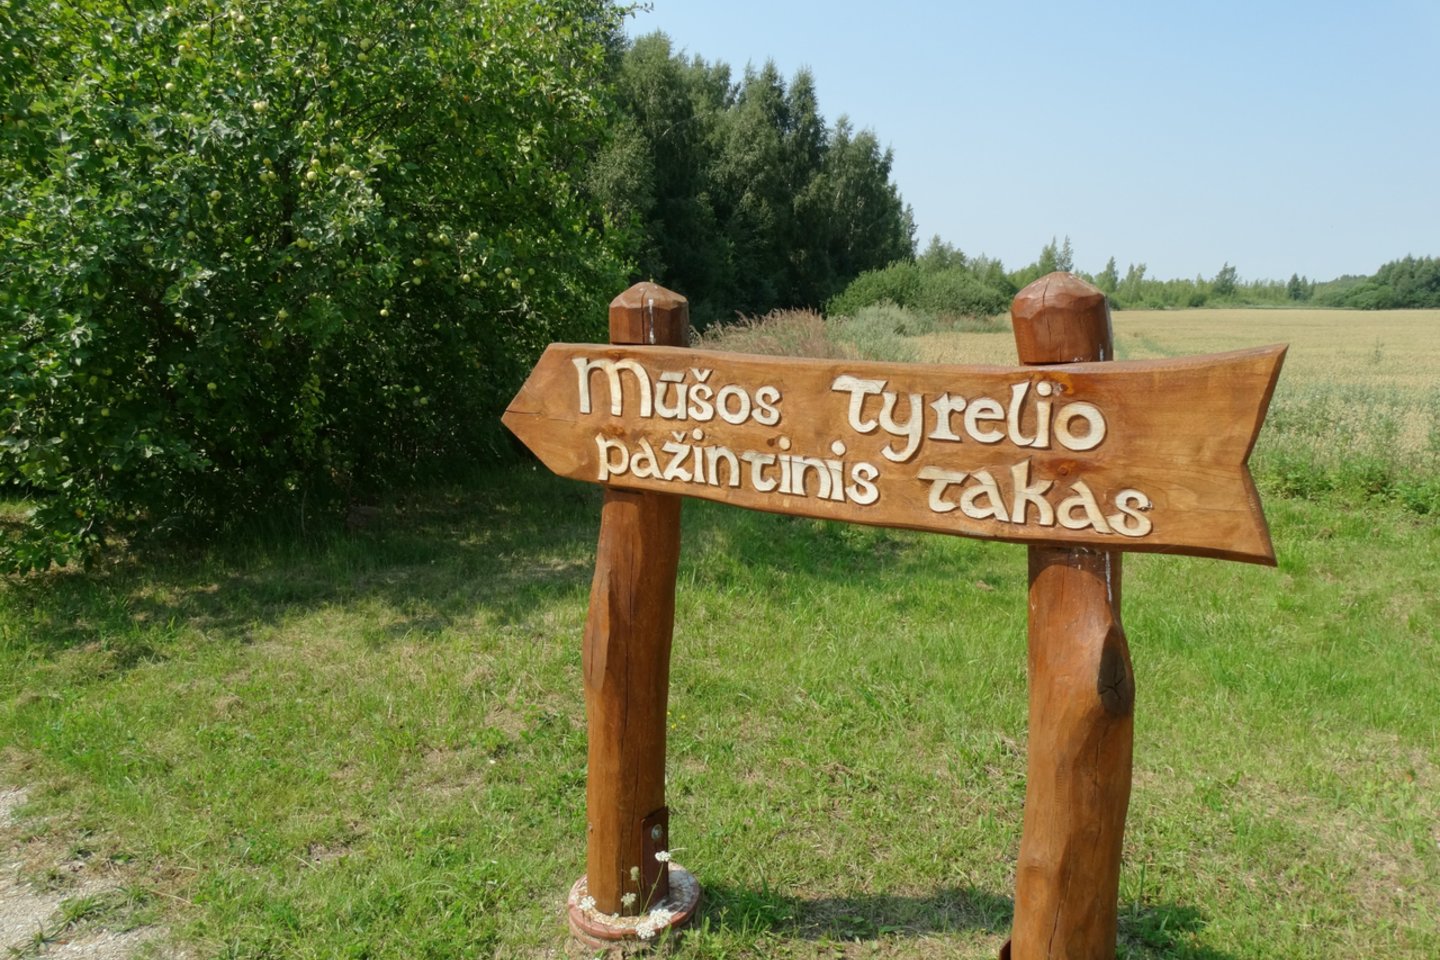 Mūšos tyrelio pažintinis takas – ilgiausias Lietuvoje lentų takas per pelkę.